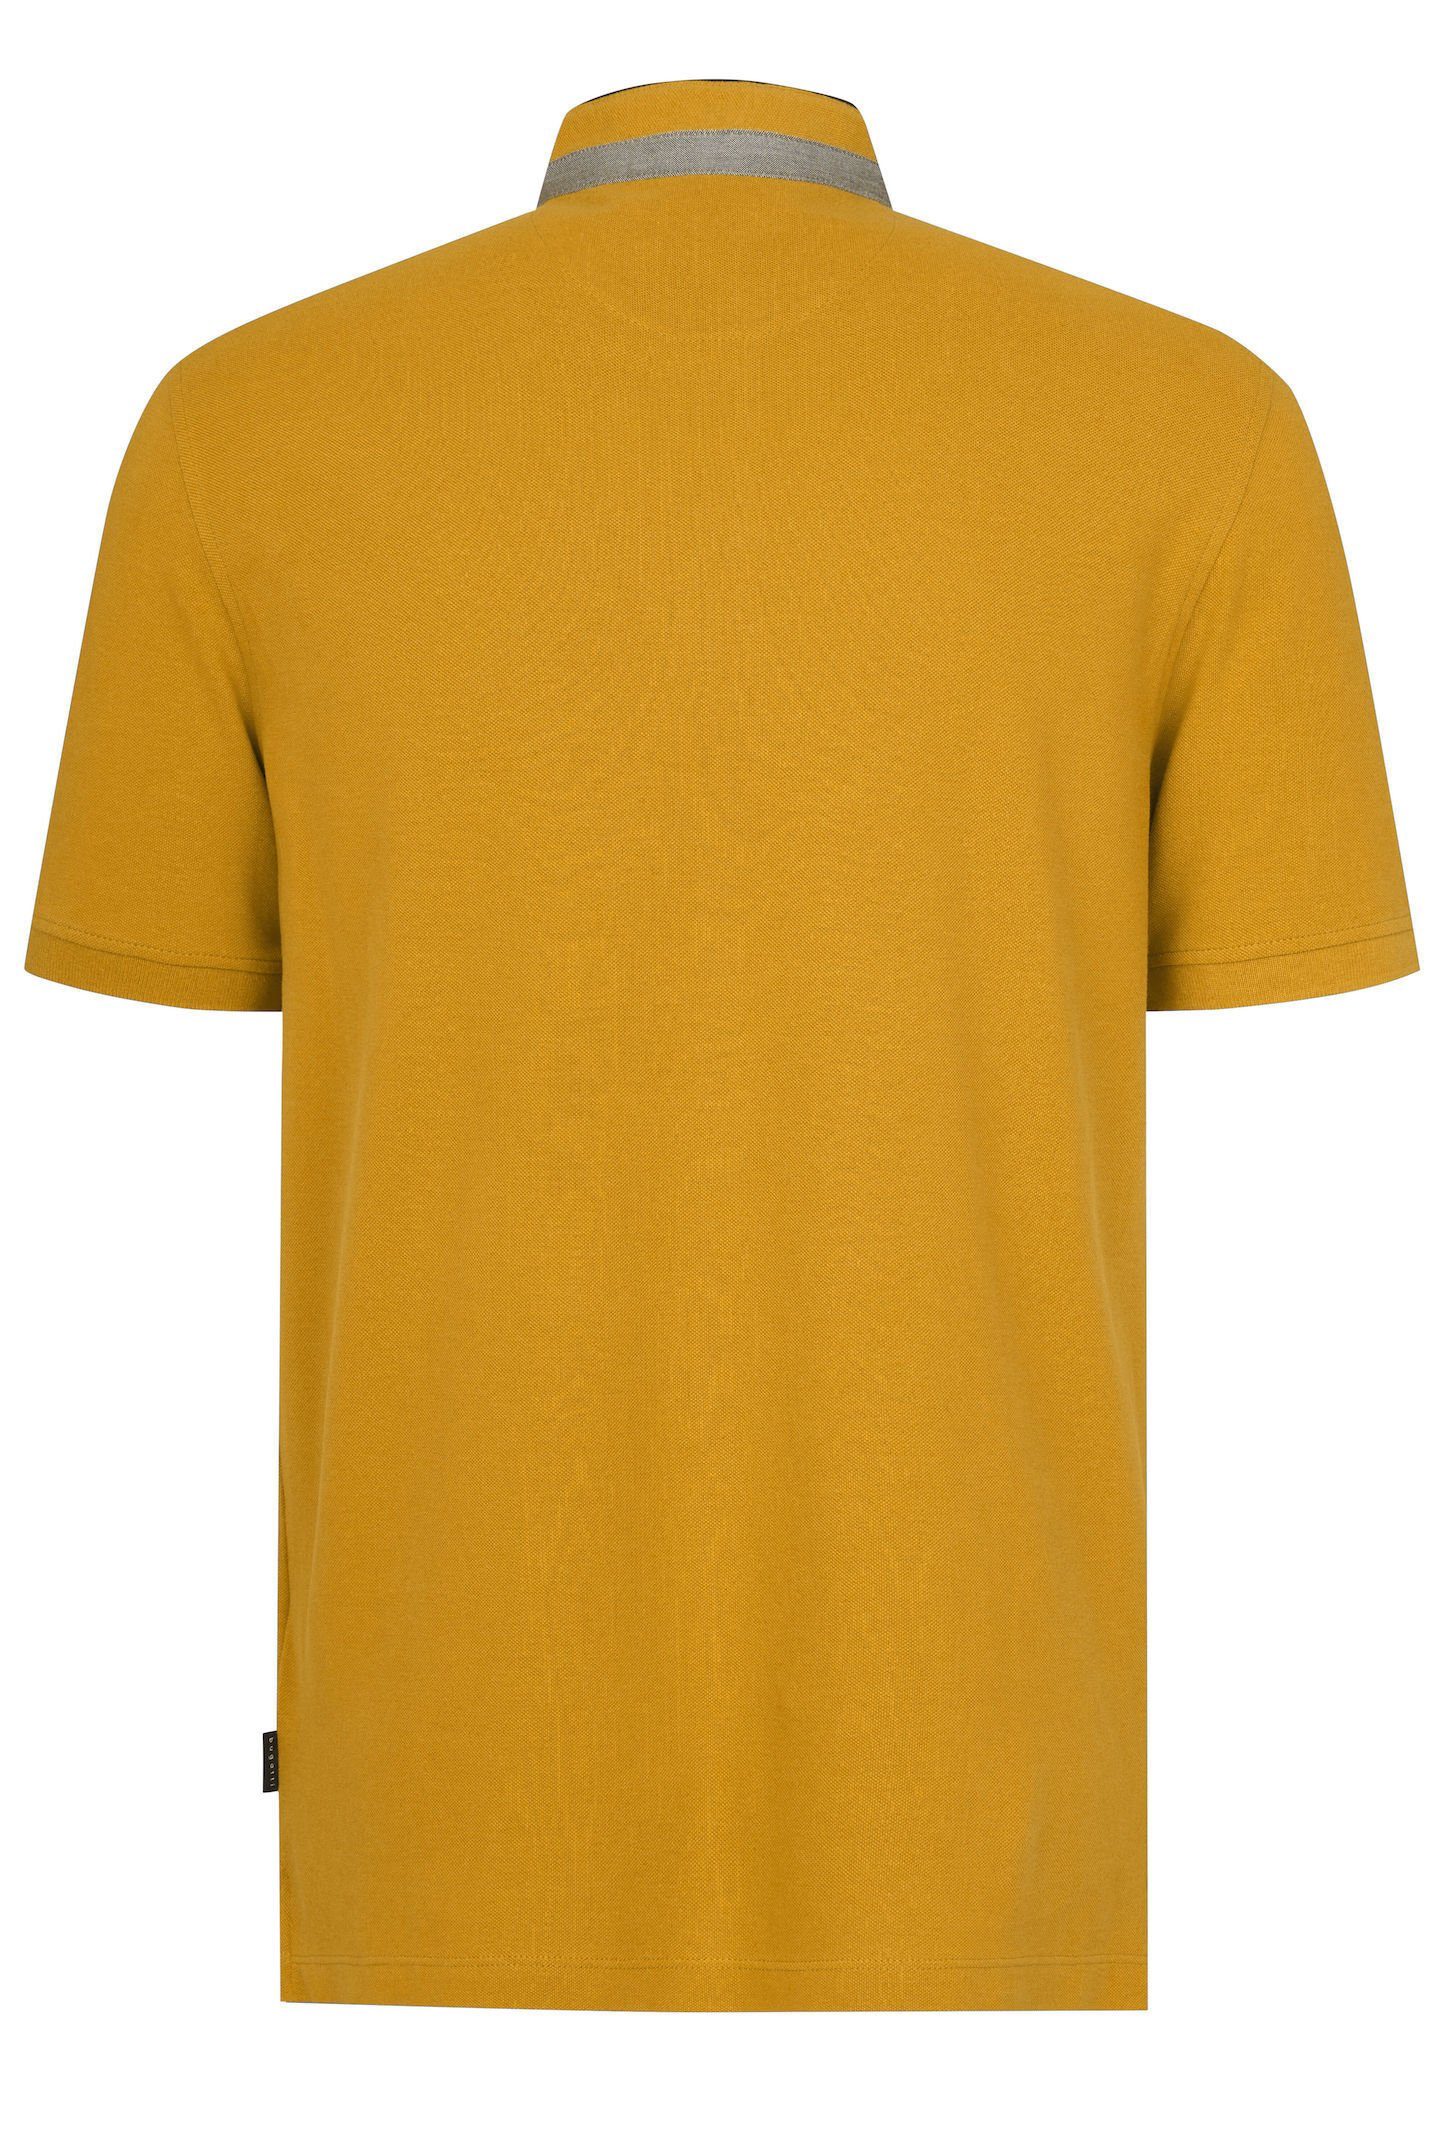 Poloshirt mit bugatti Stehkragen gelb